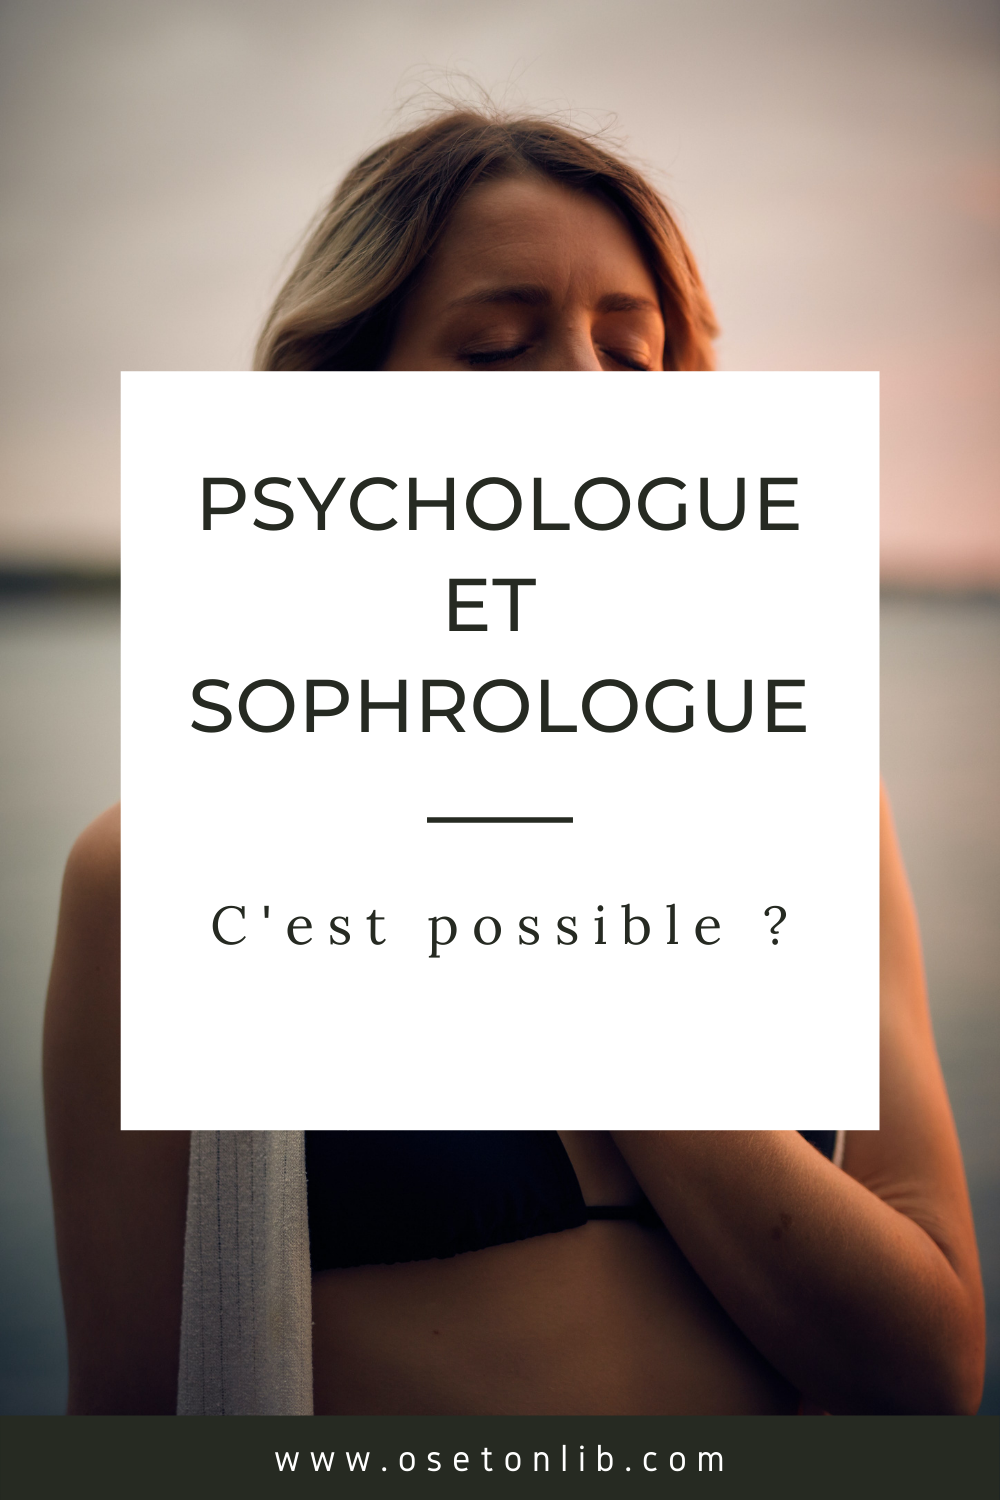 Psychologue et sophrologue, c’est possible ?